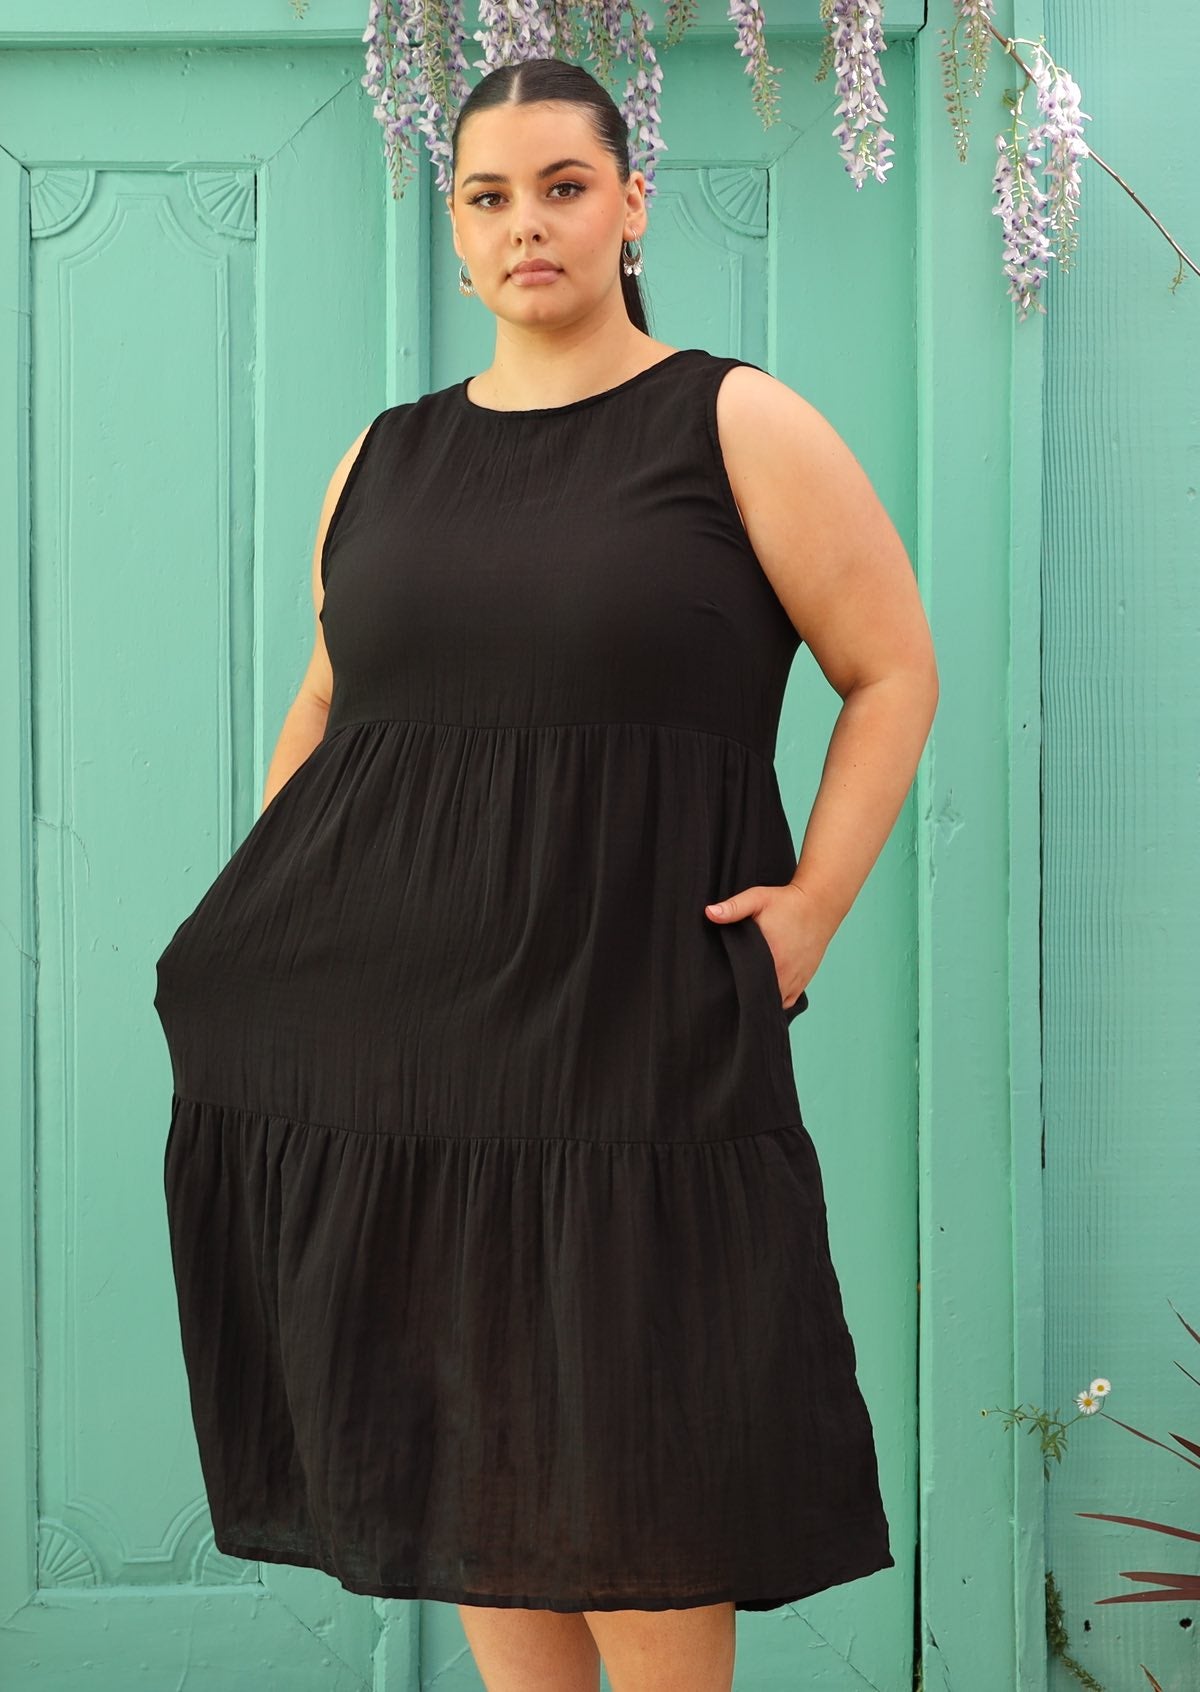 Plus sized woman wearing cotton black dress